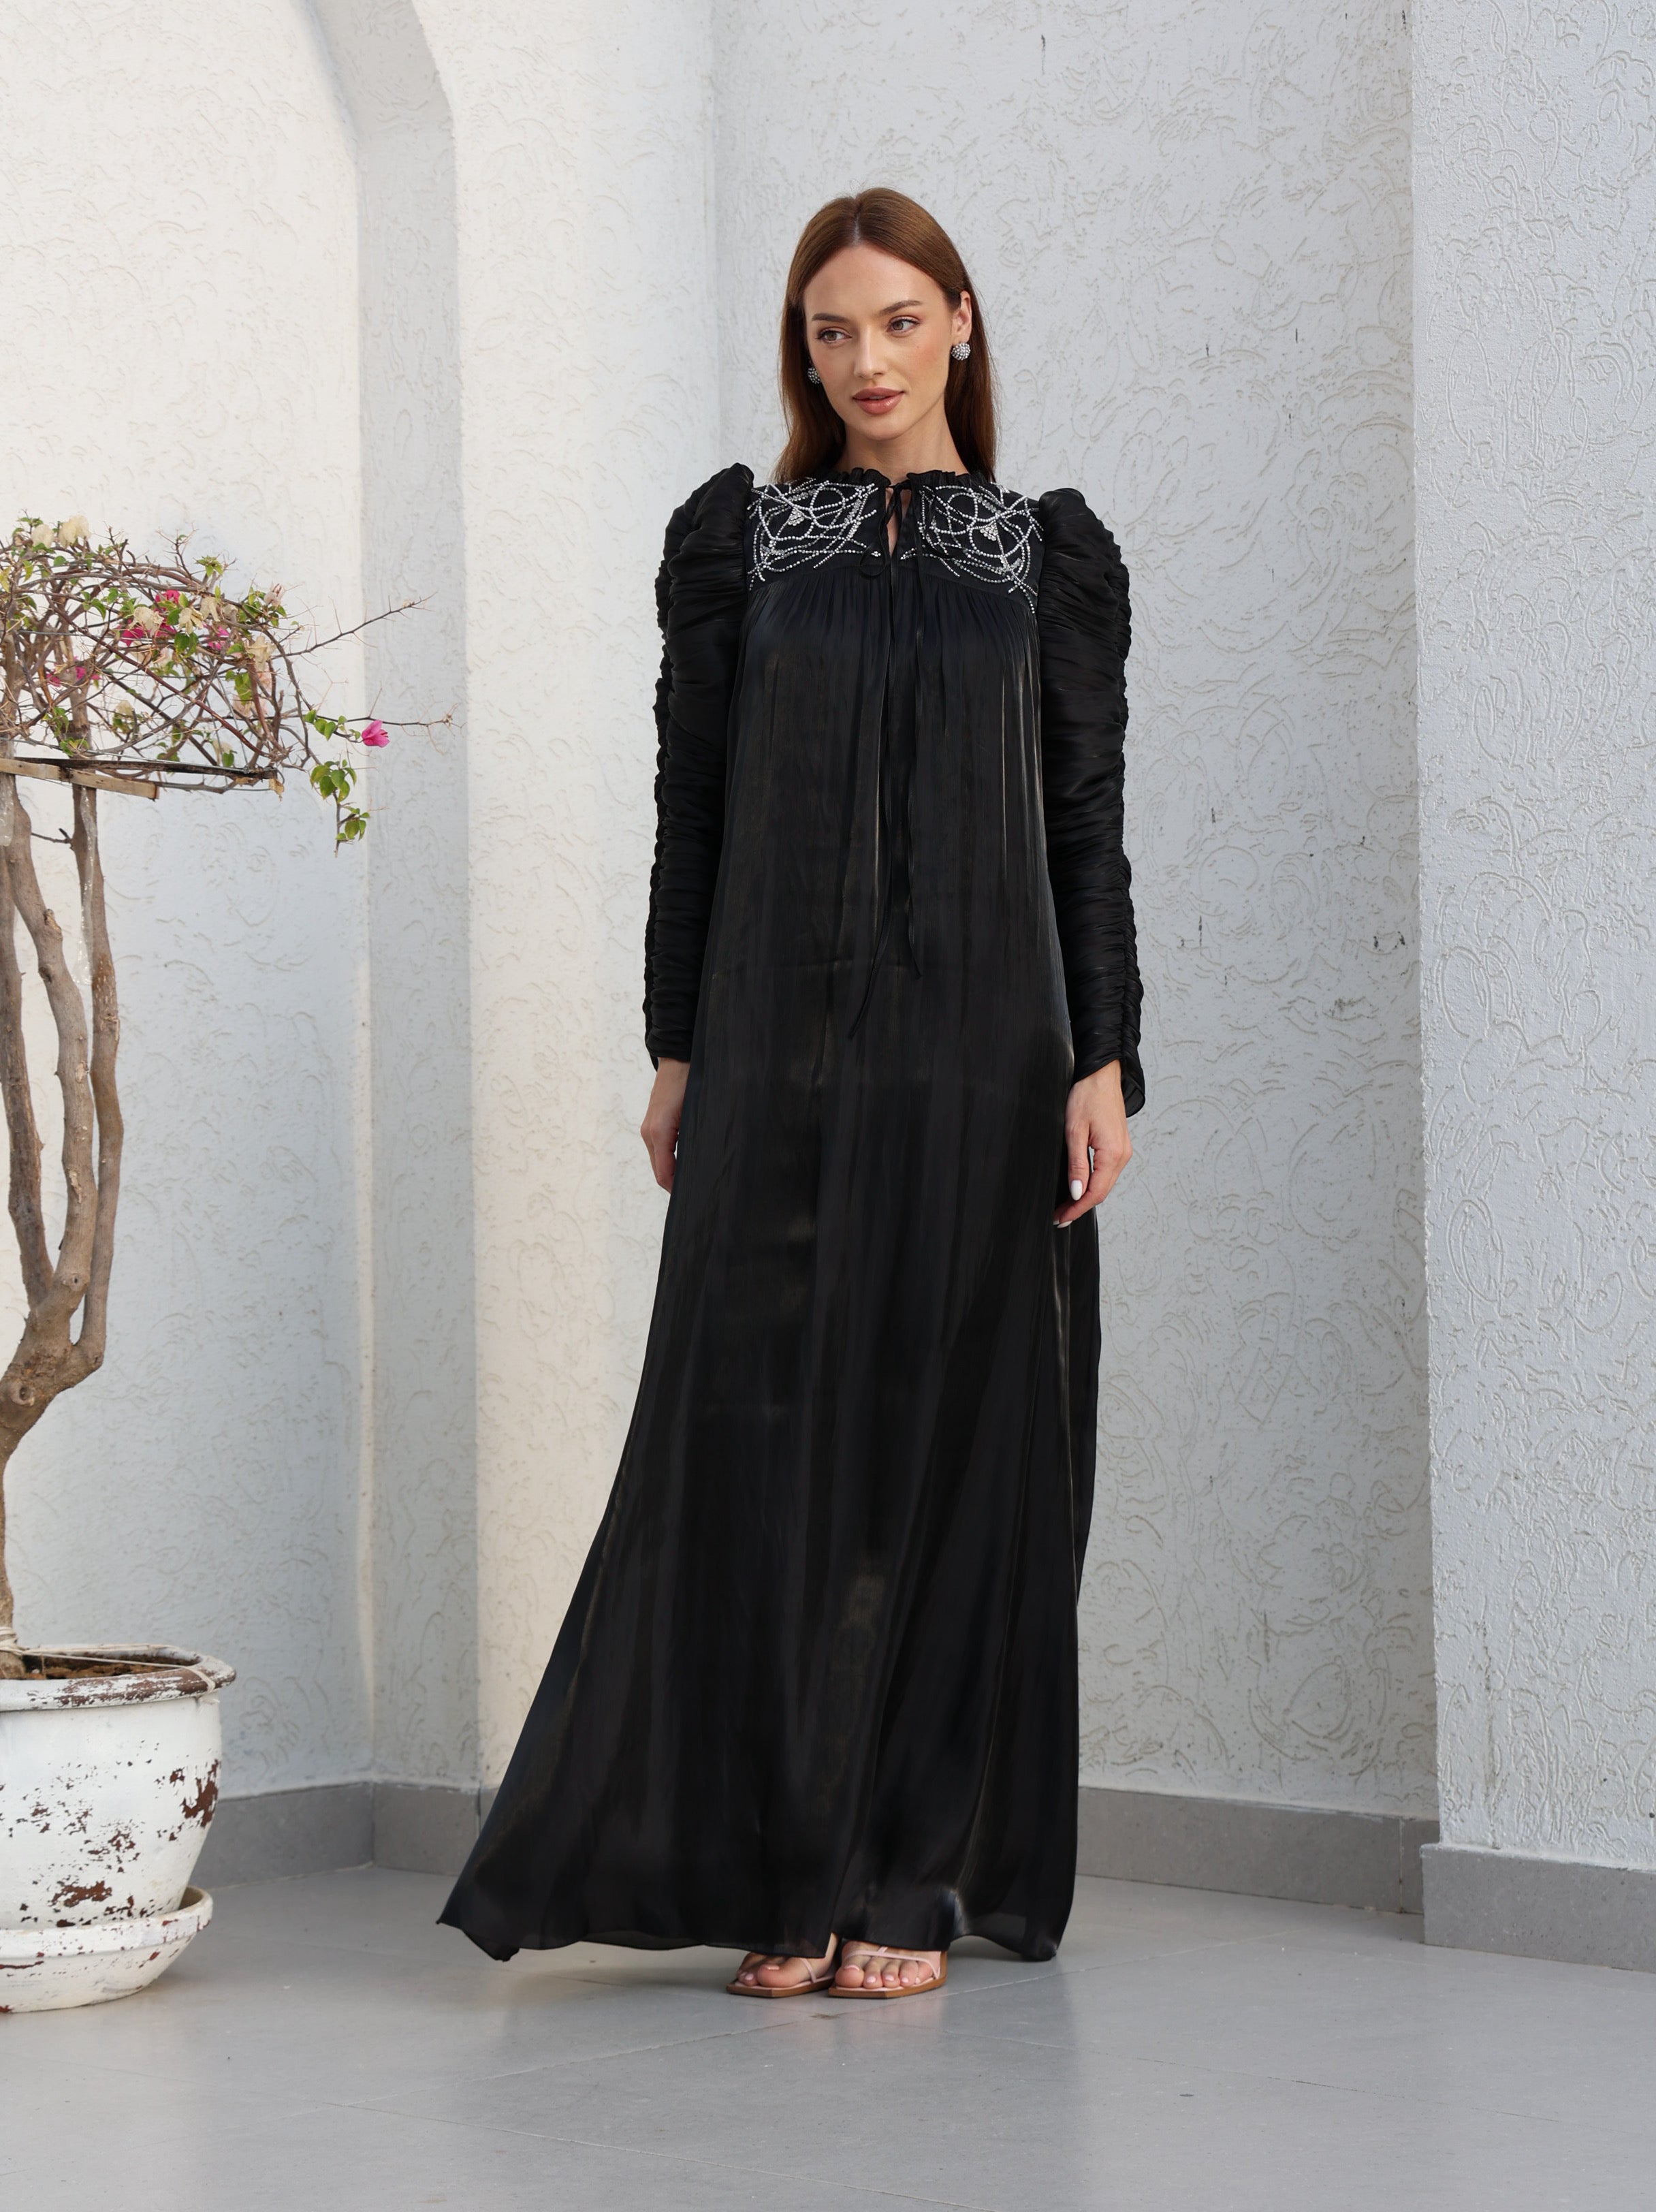 Французское платье в черном цвете